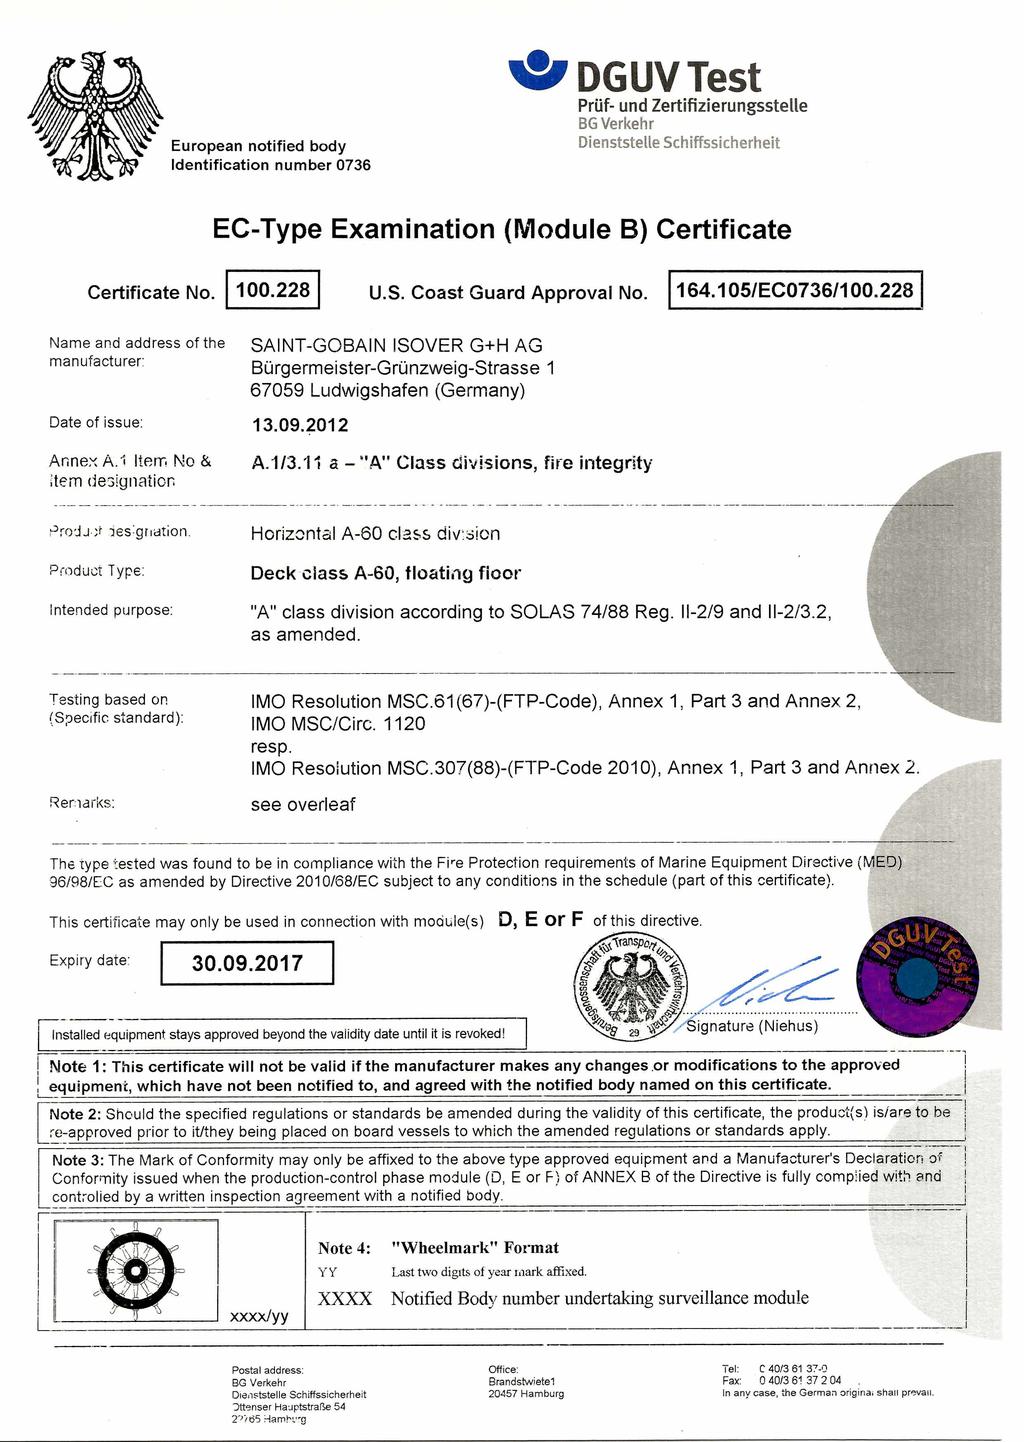 European notified body Identification number 0736 DGUV Test Prüf- und Zertifizierungsstelle BG Verkehr Dienststelle Schiffssicherheit EC-Type Examination (Module B) Certificate Certificate No. 100.